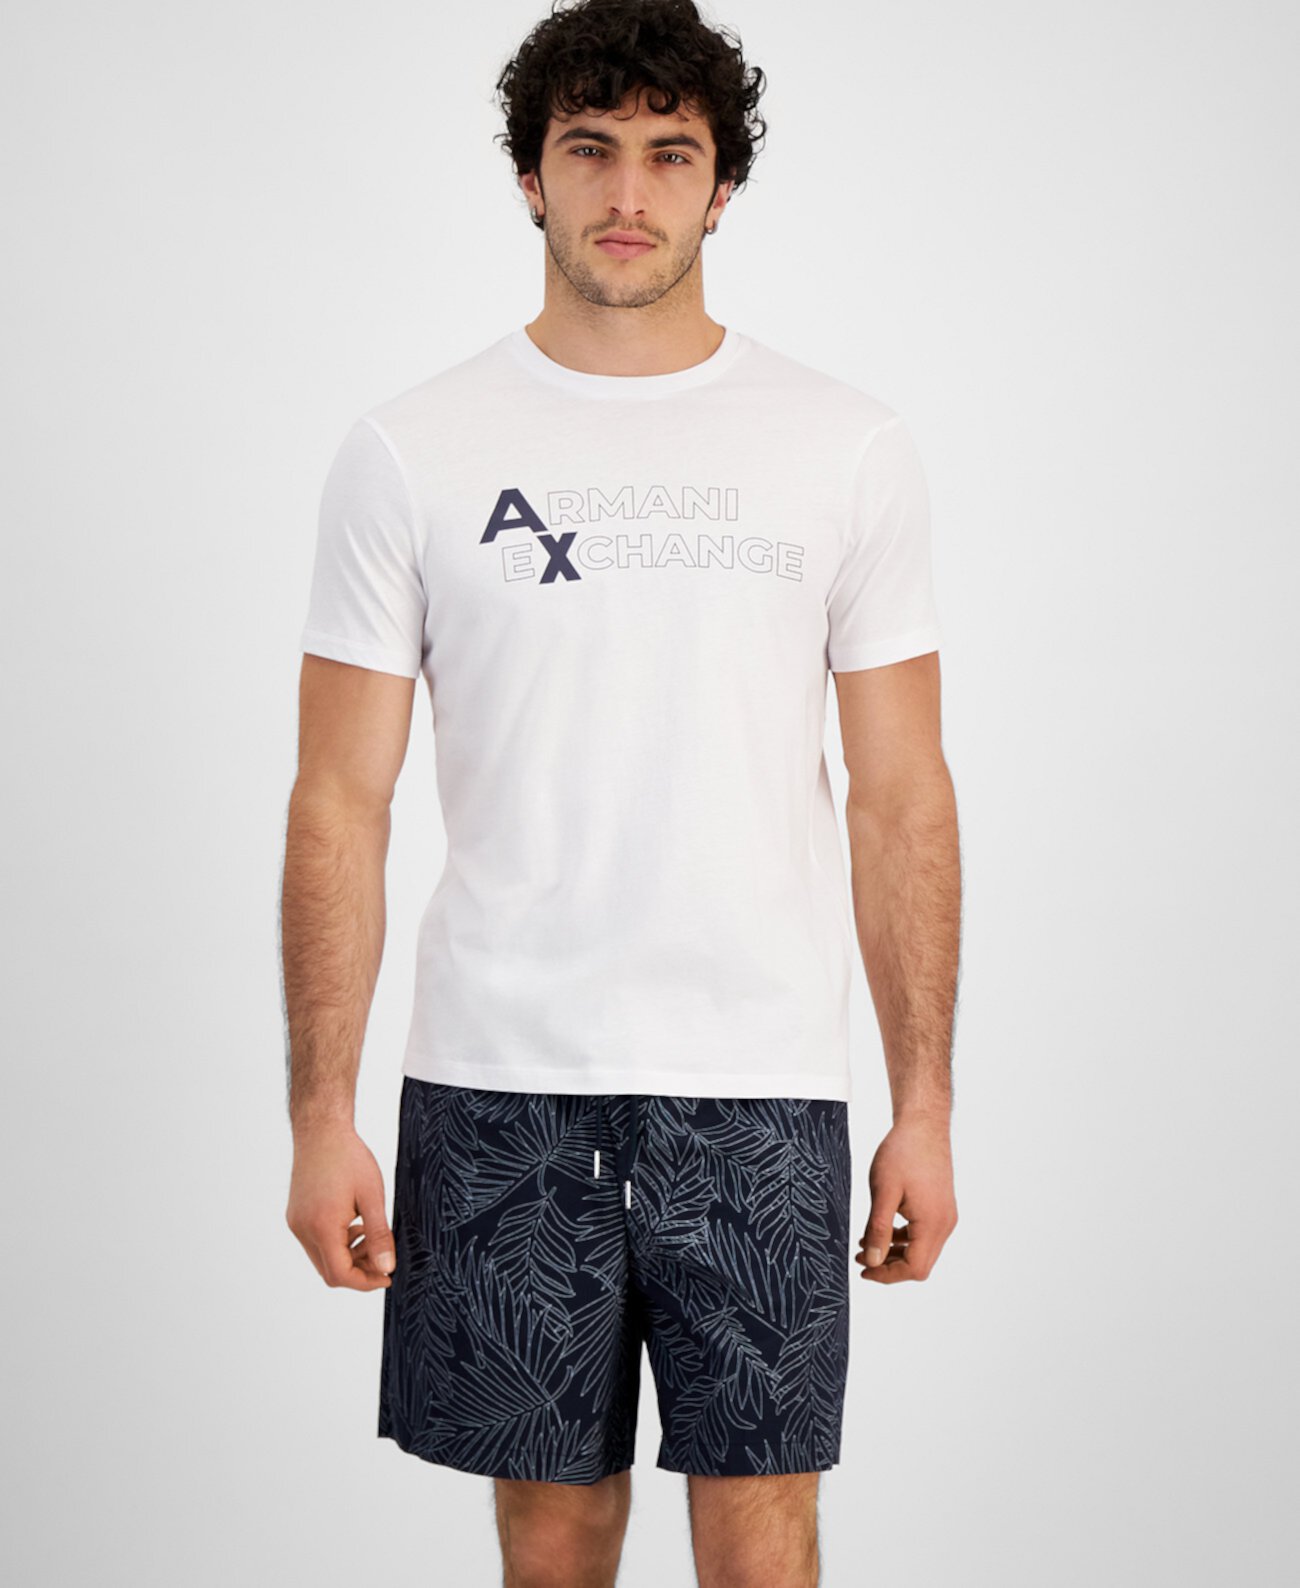 Мужская футболка с логотипом, созданная для Macy's Armani